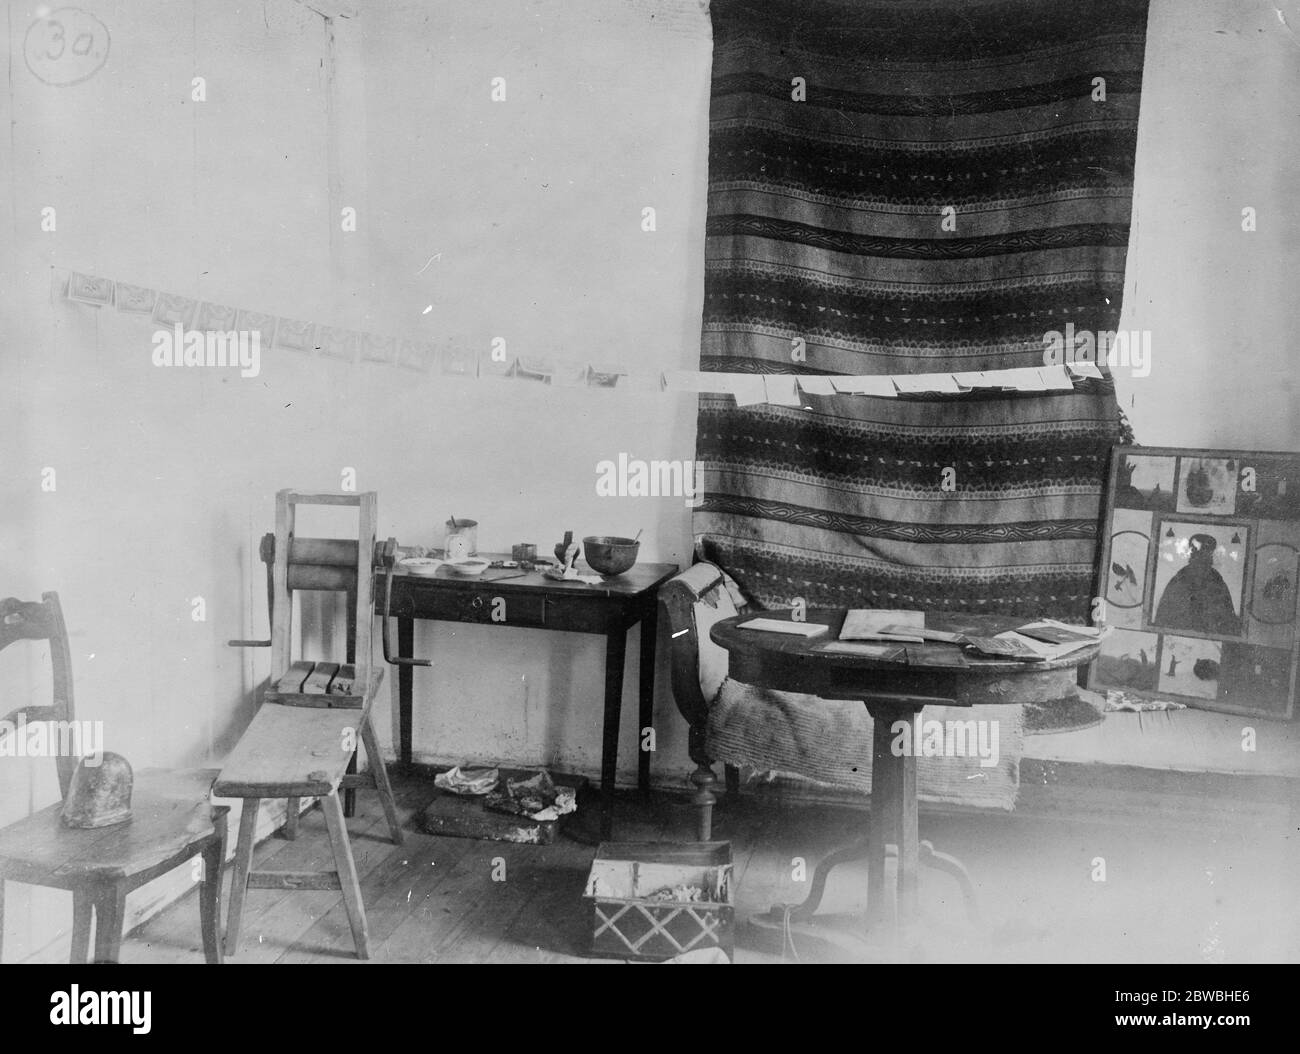 Forgers den , Irkutsk , religione e criminalità immagini sacre in angolo , in Russia 1920 Foto Stock